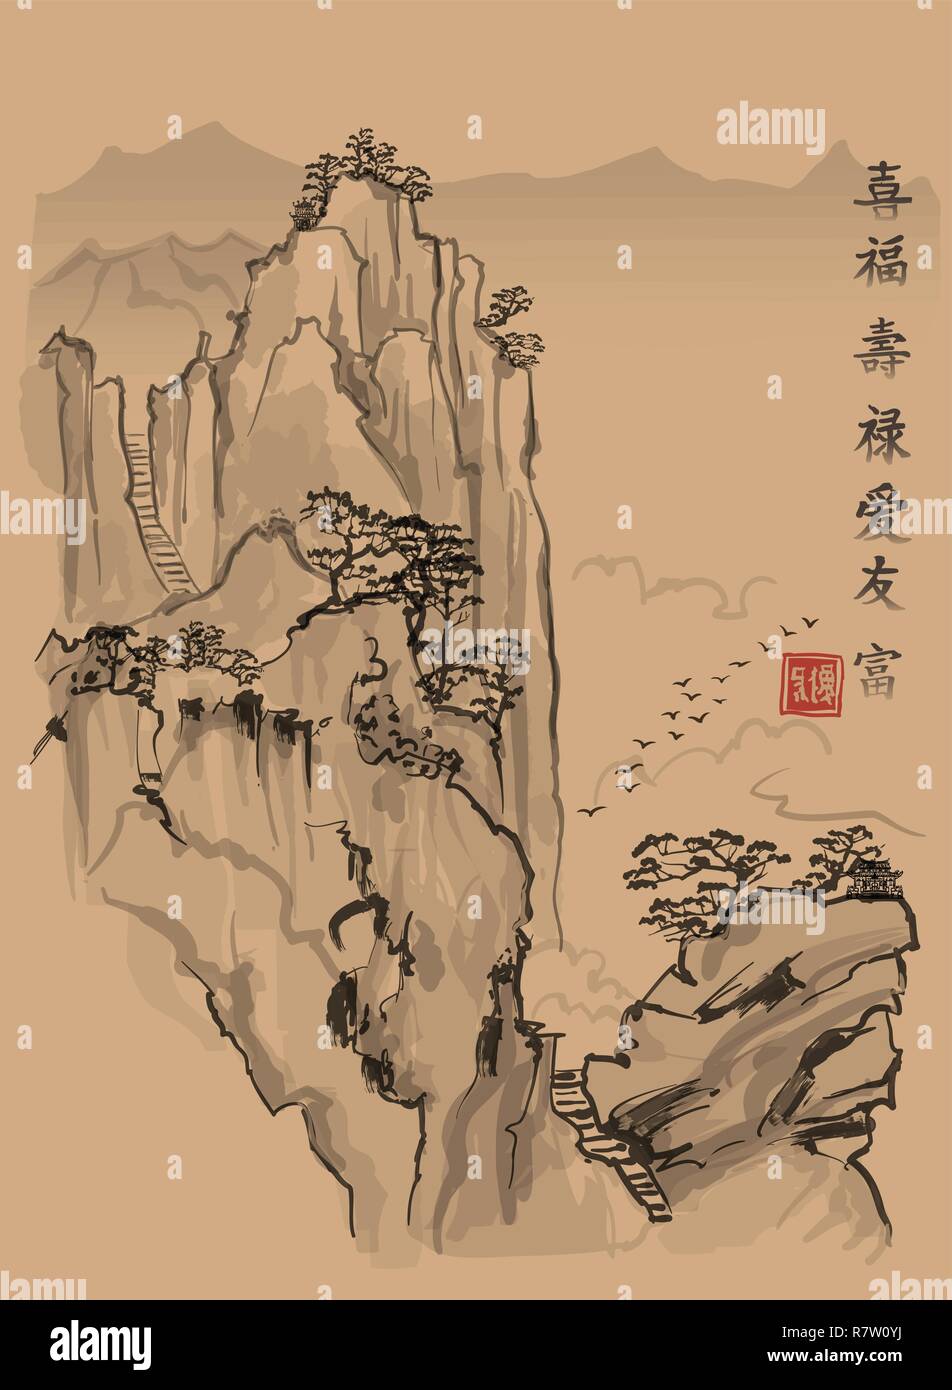 Chinesische Landschaft mit Berg und Wolken im Stil der alten chinesischen Malerei - vector Abbildung: Bedeutung der chinesischen Schriftzeichen von oben t Stock Vektor